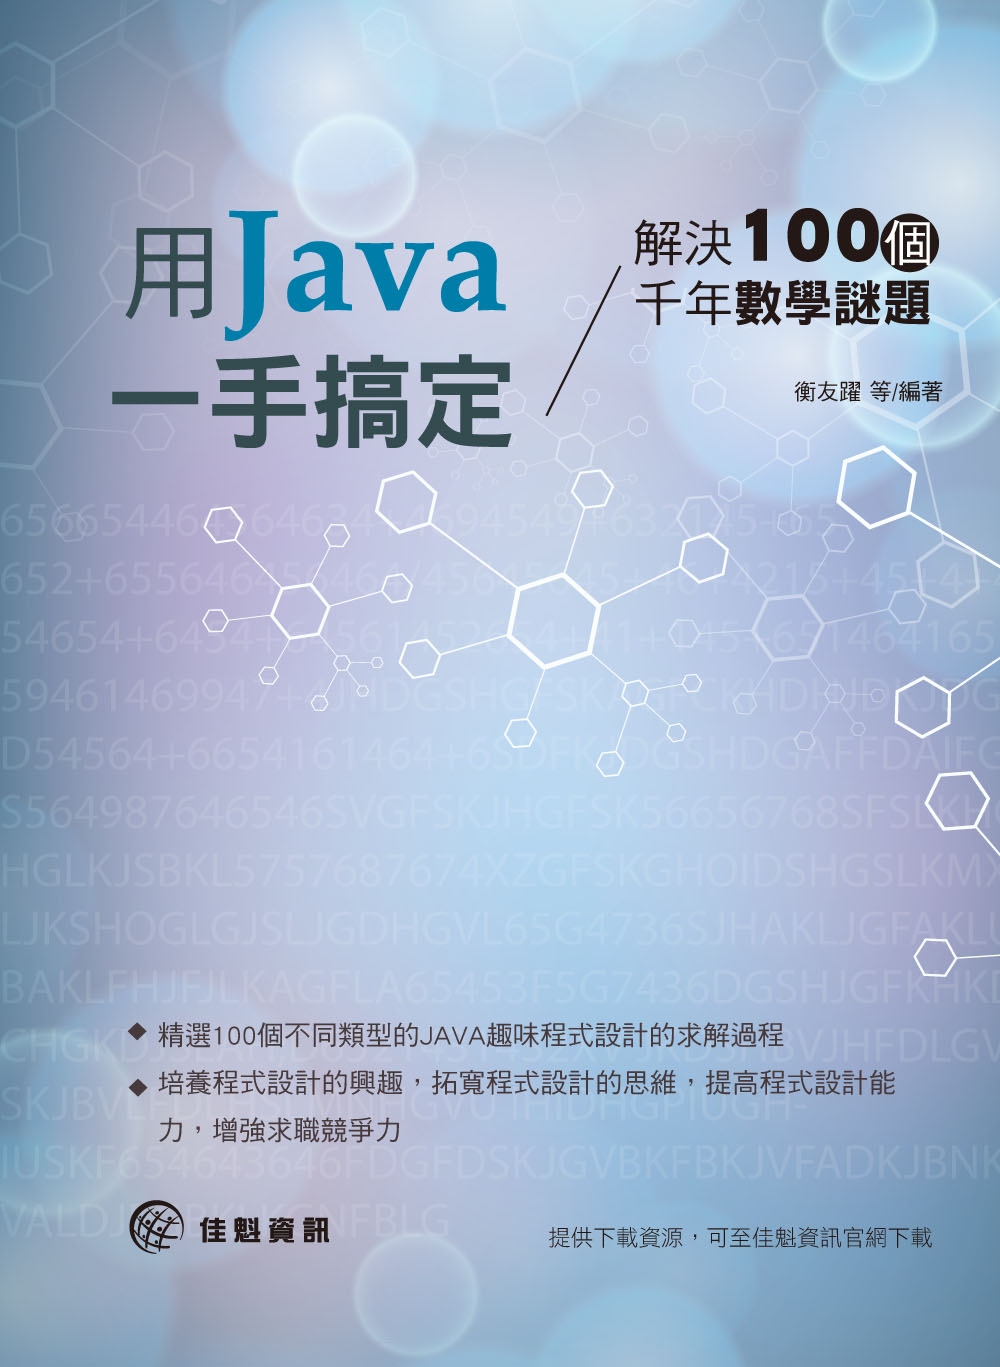 解決100個千年數學謎題：用Java一手搞定